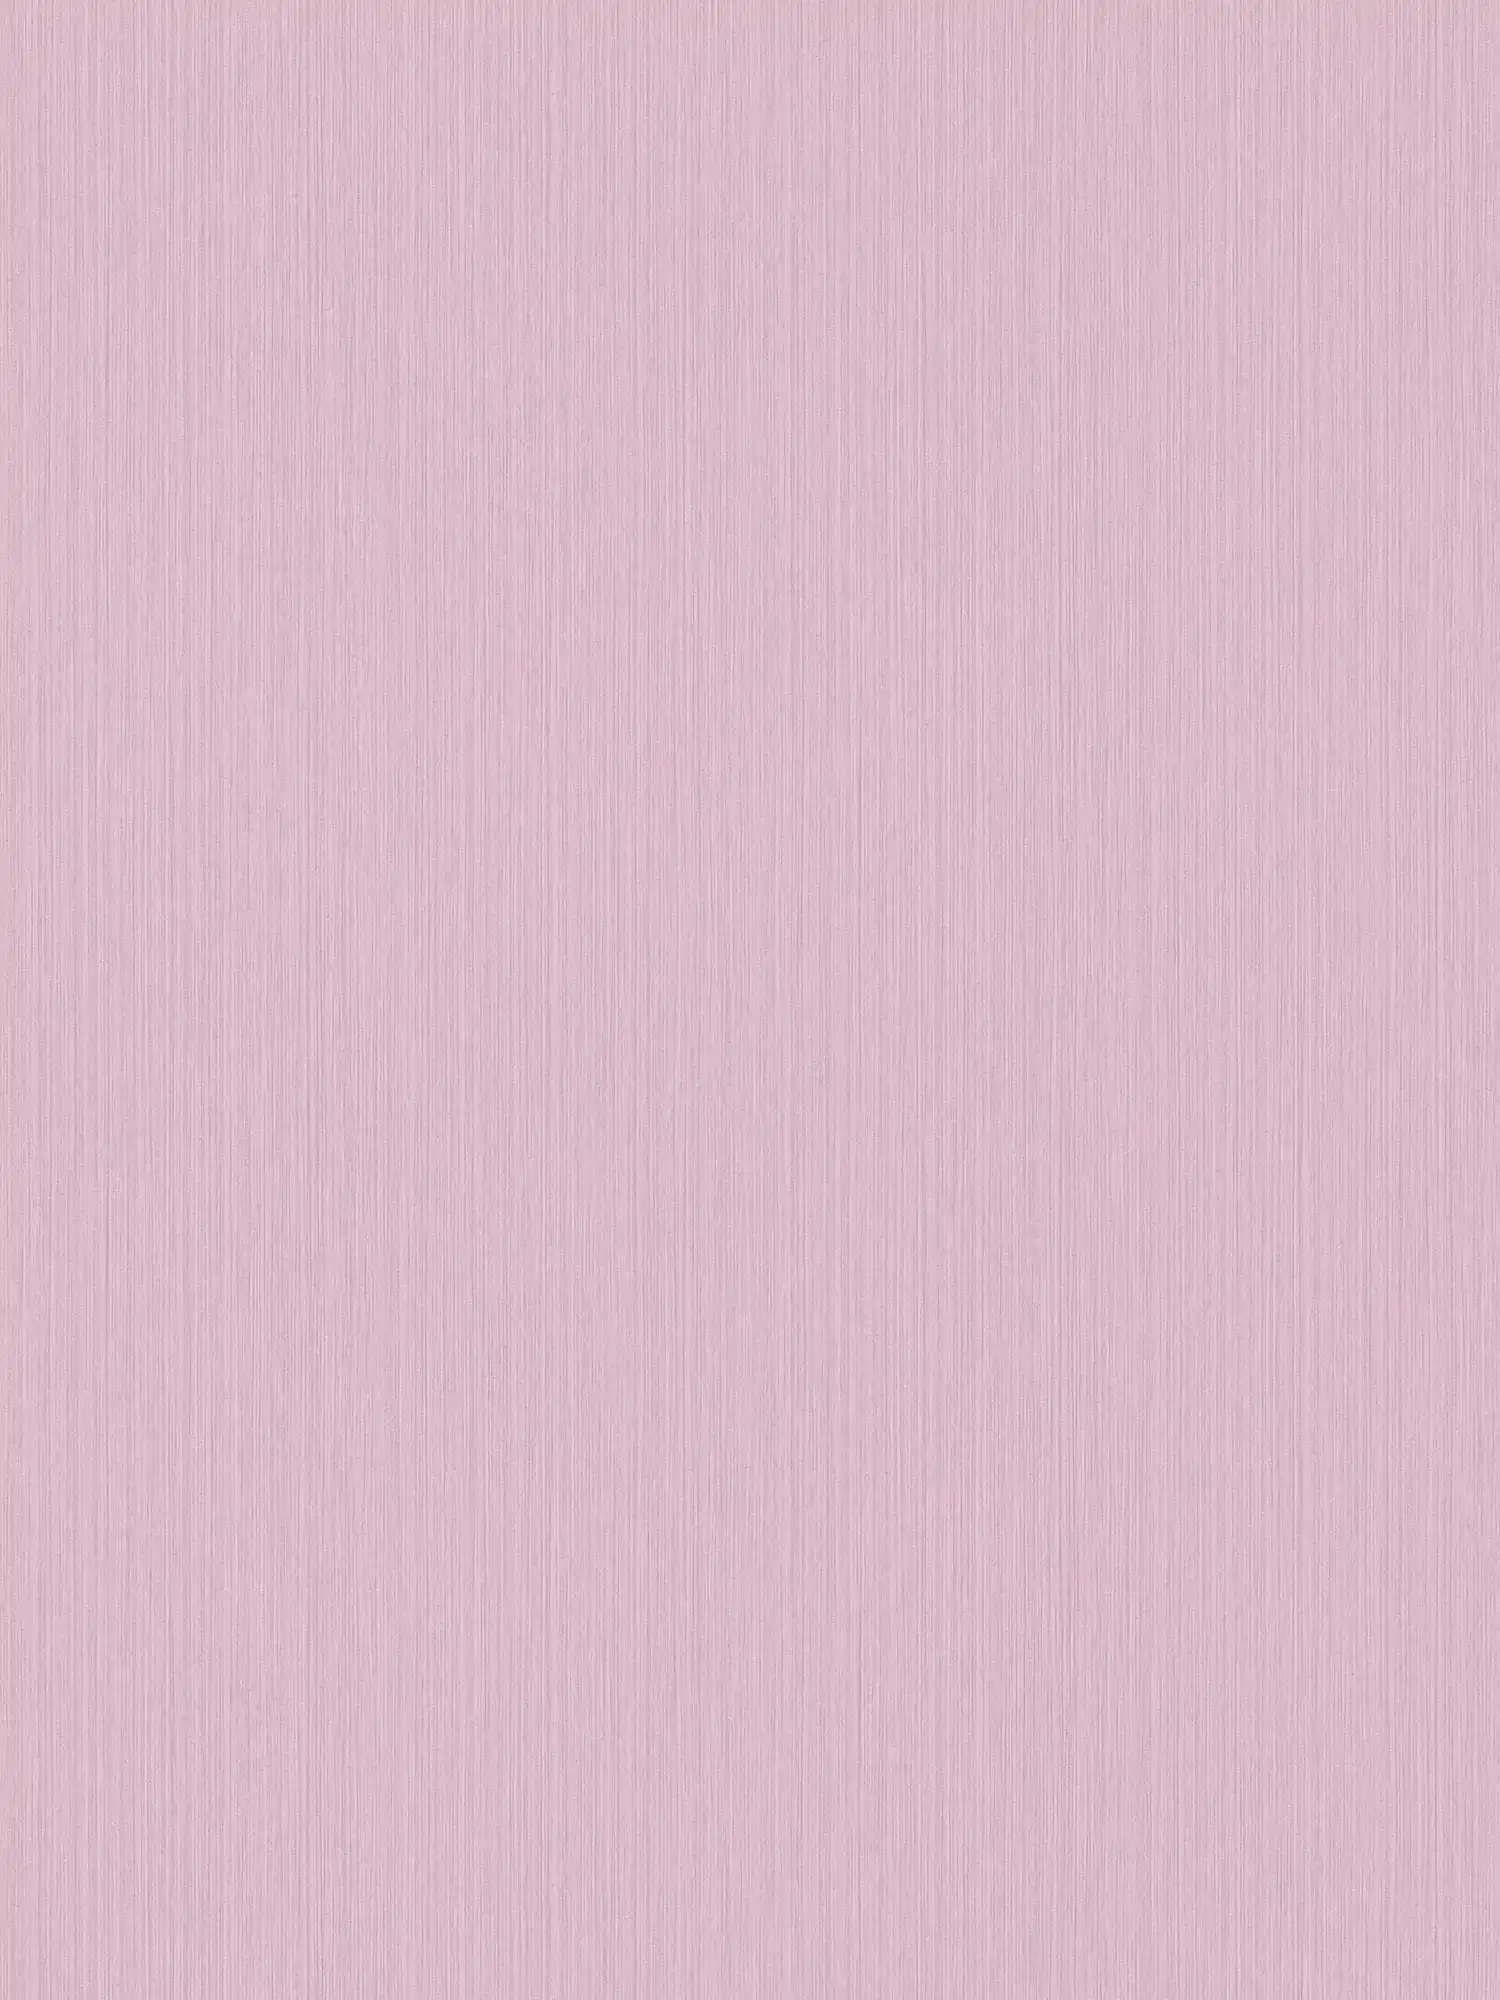 Einfarbige Tapete Rosa mit meliertem Textileffekt von MICHALSKY
